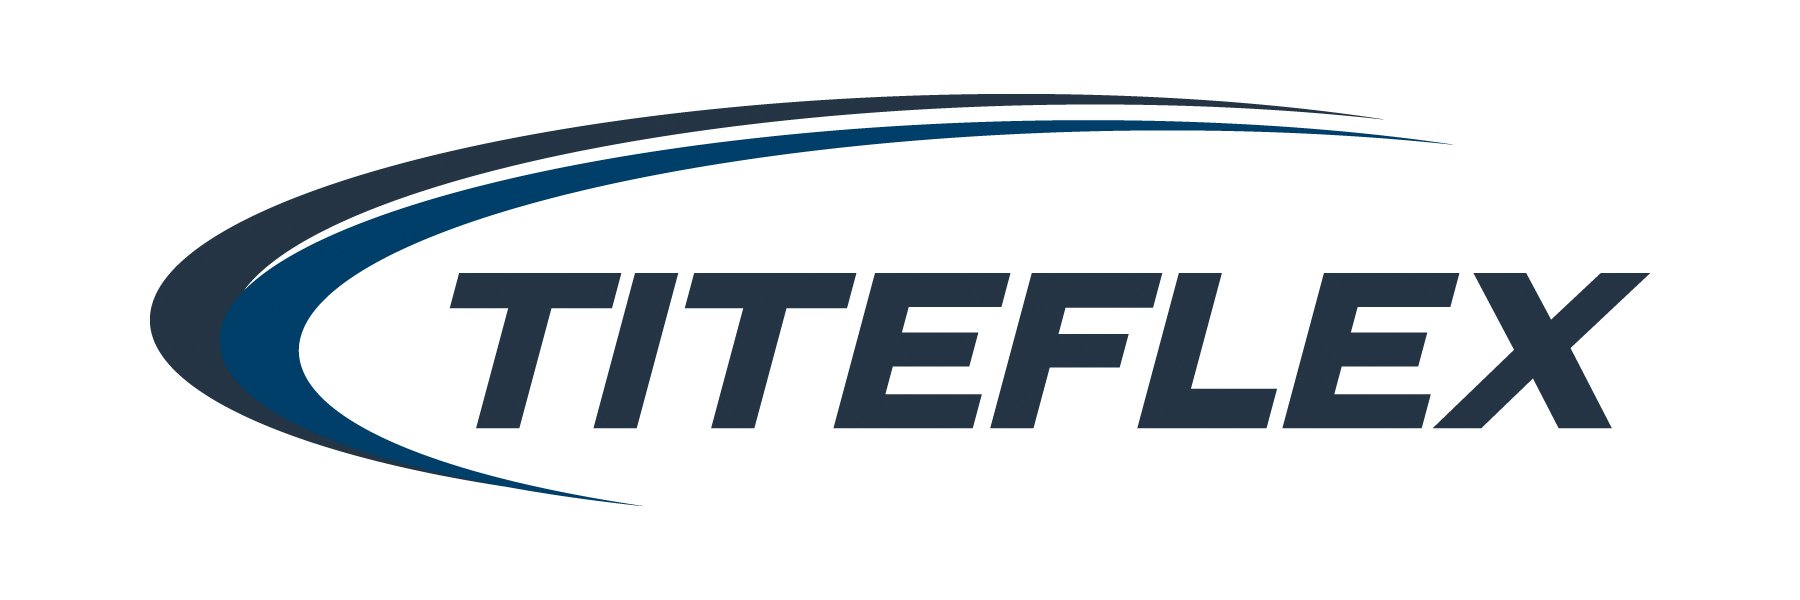 Titeflex_Logo_2C.jpg